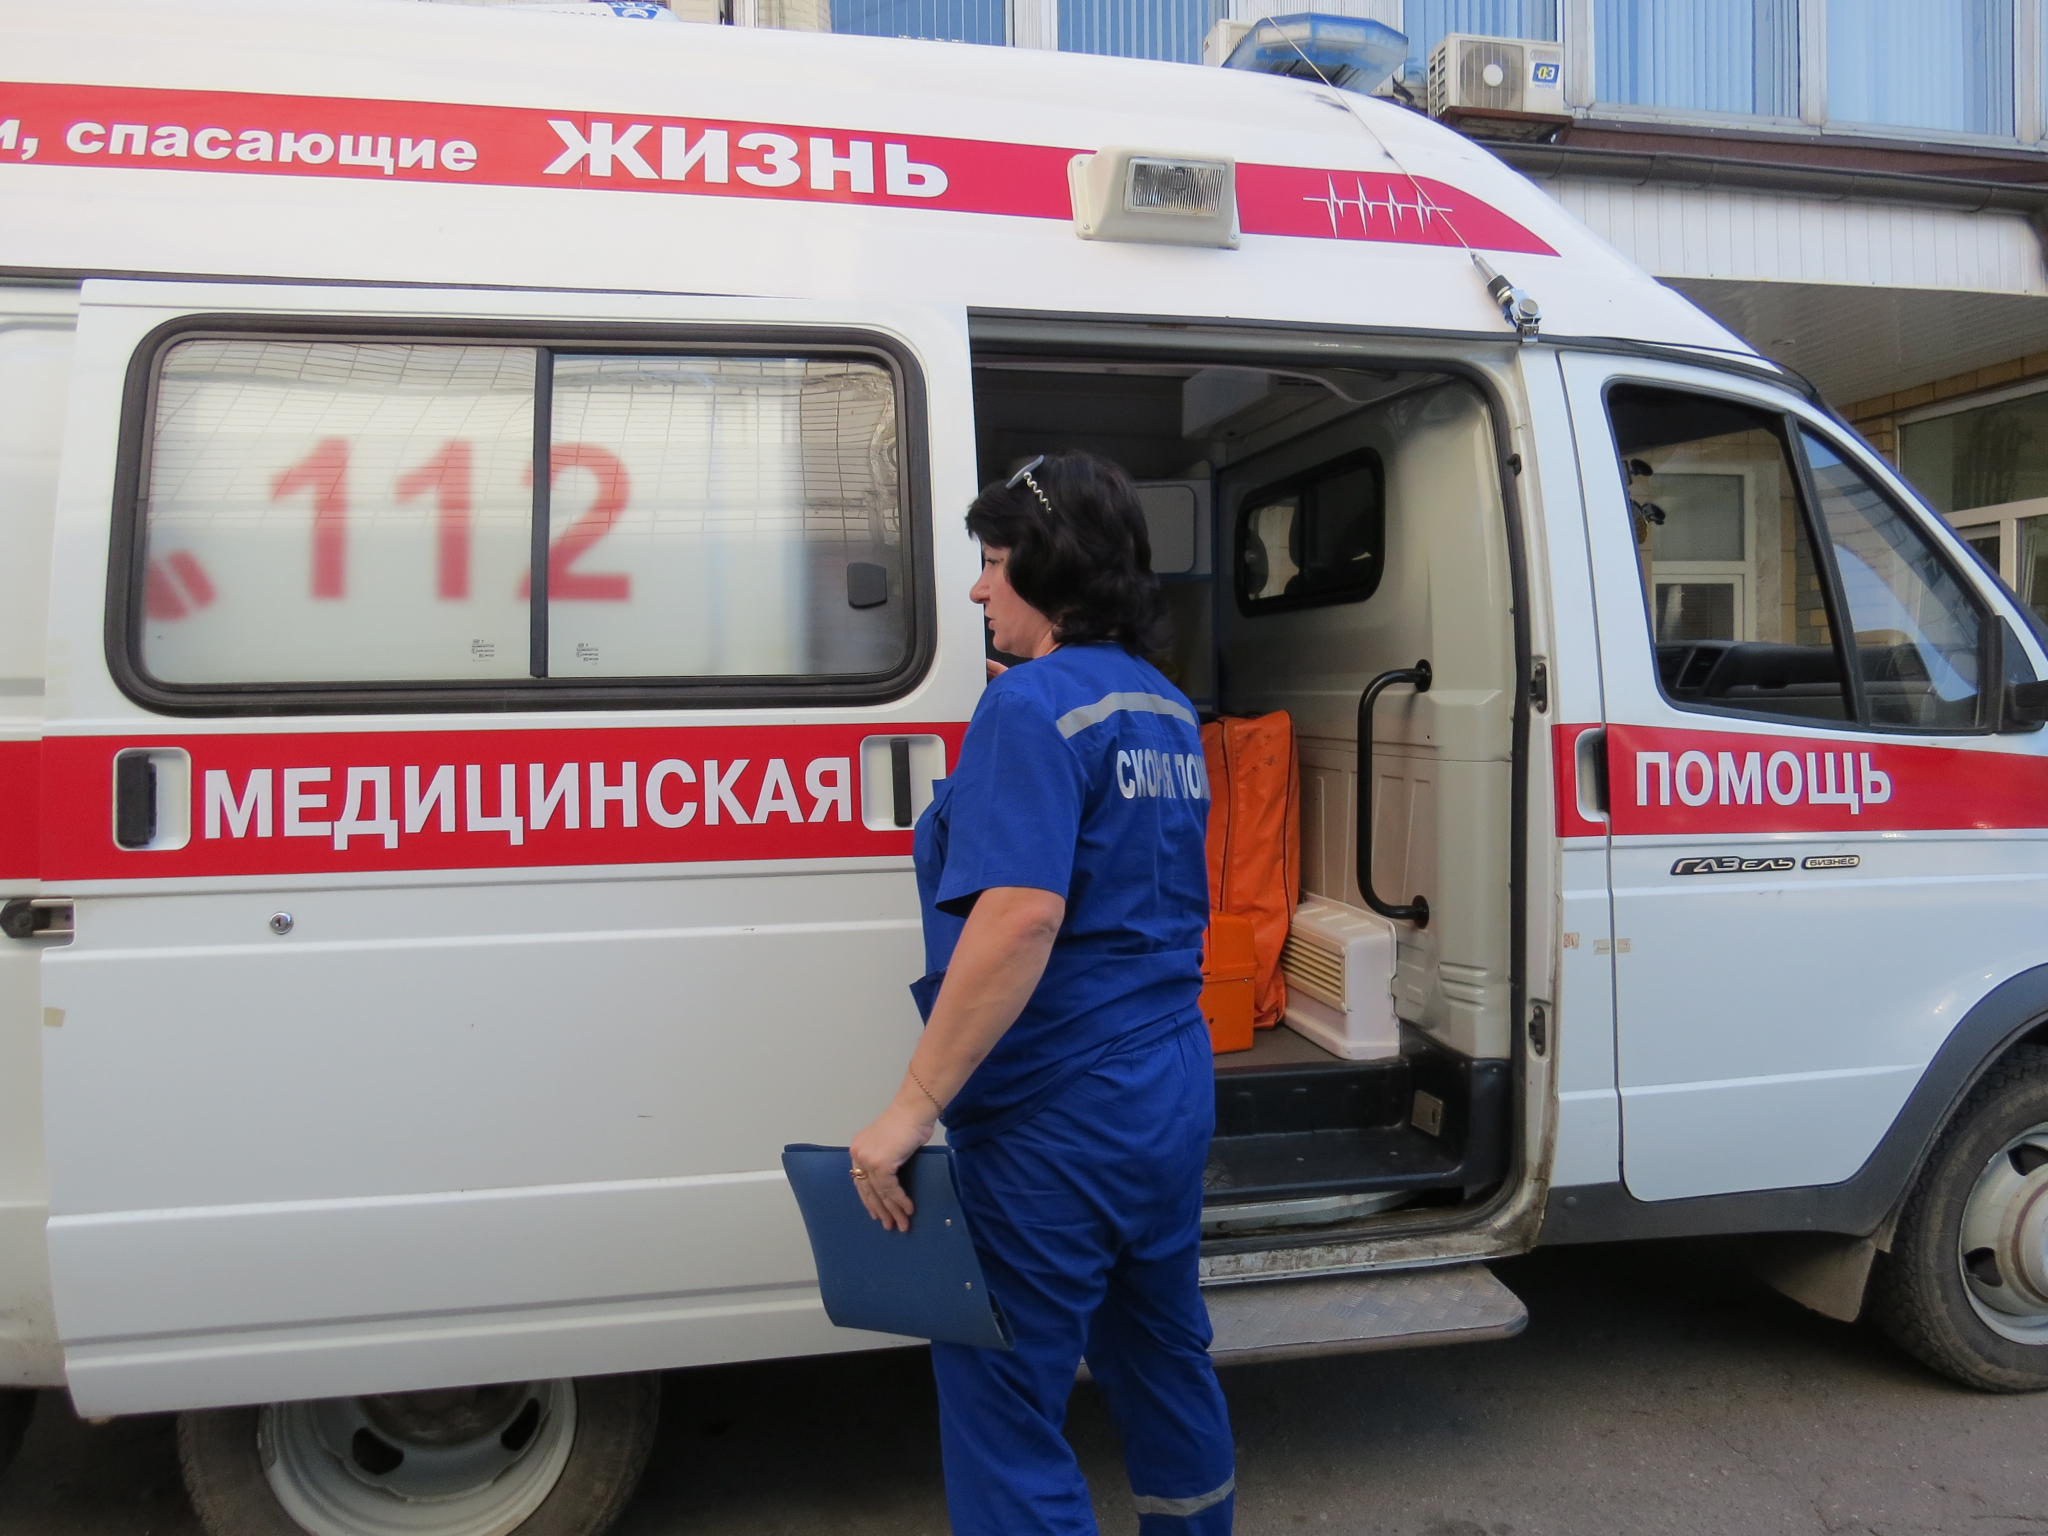 134 новых случаев заражения COVID-19 выявлено в Нижегородской области